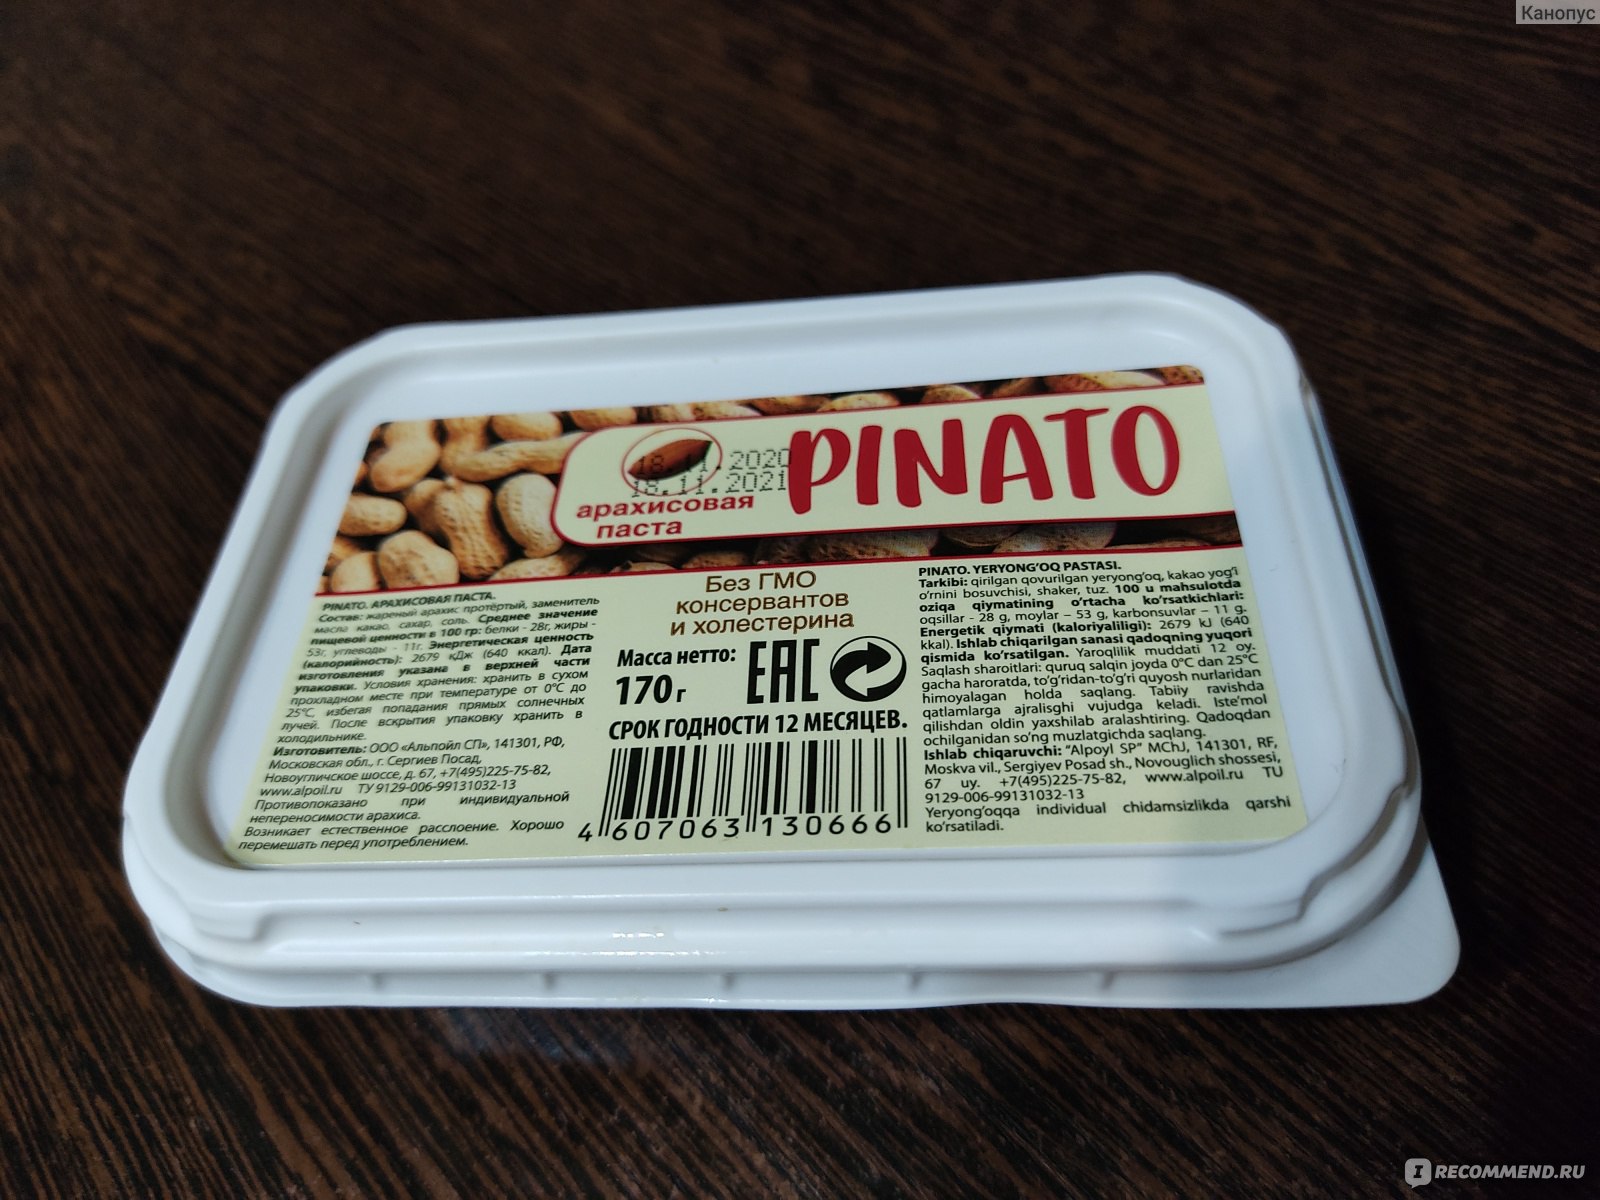 Паста привет это я твой. Арахисовая паста. Арахисовая масло Pinato. Ореховая паста Pinato. Арахисовая паста Pinato состав.